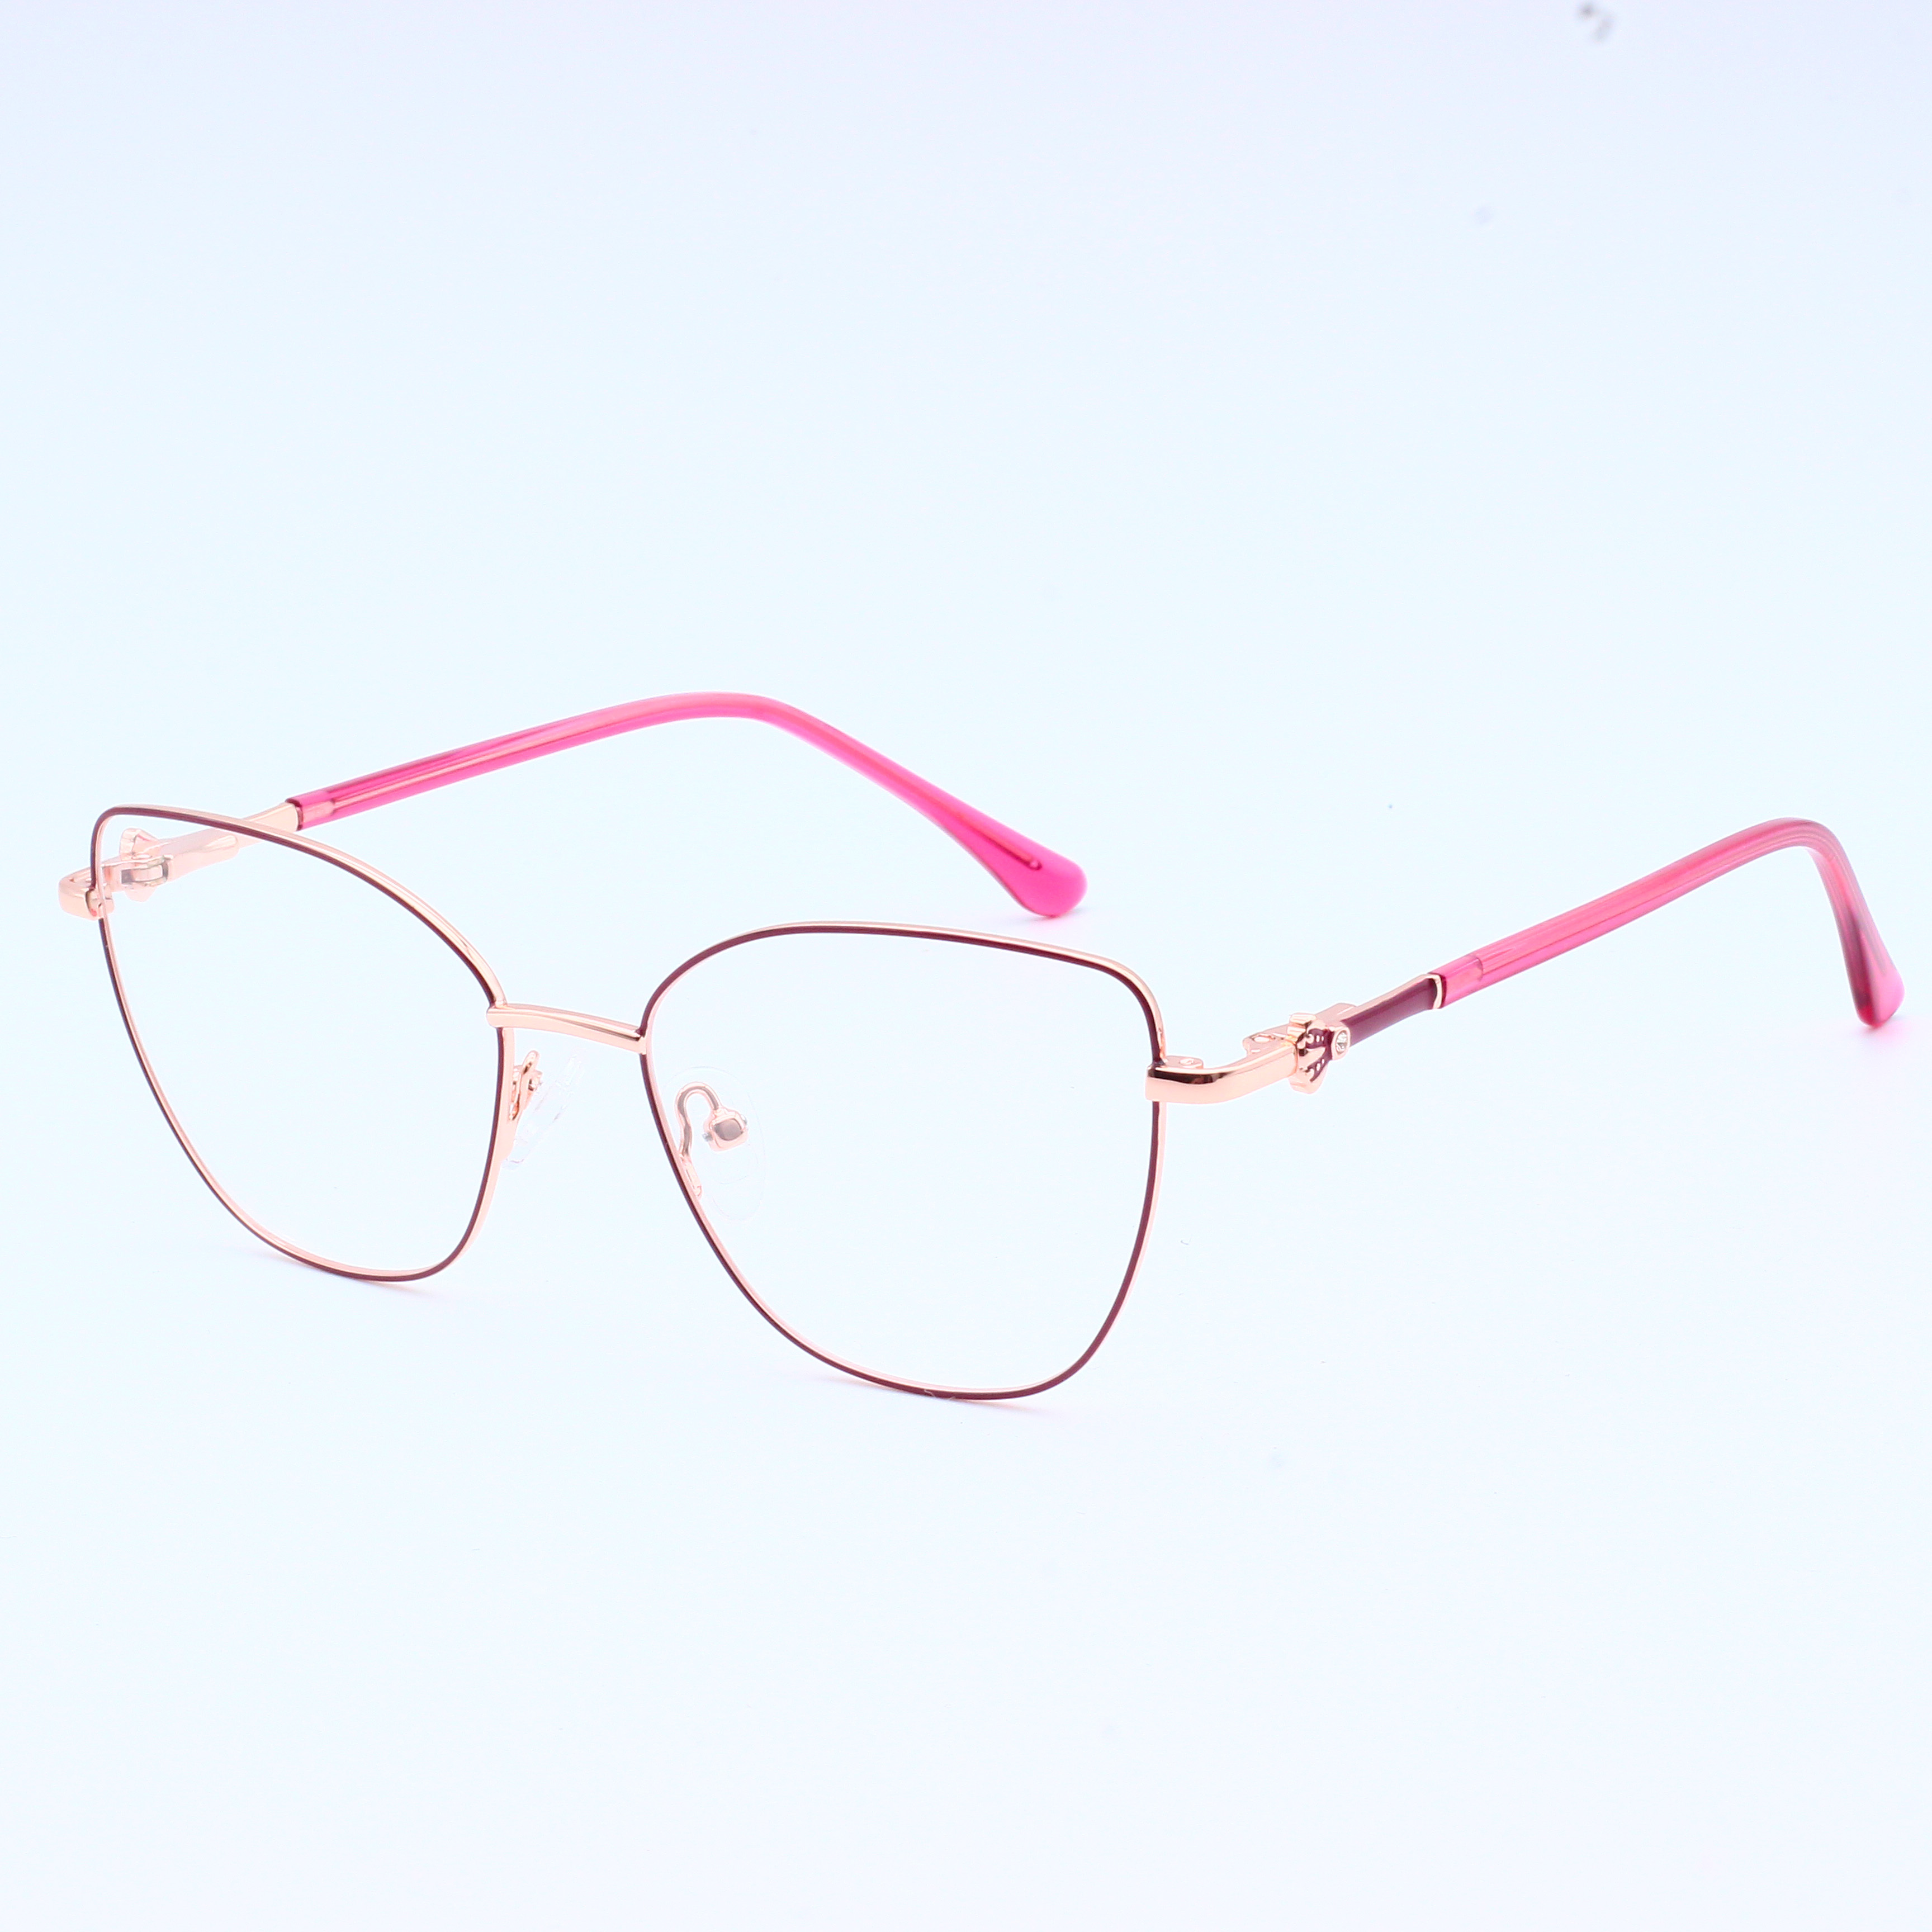 New Fashion Trend Metal Eyeglasses Frame (7)